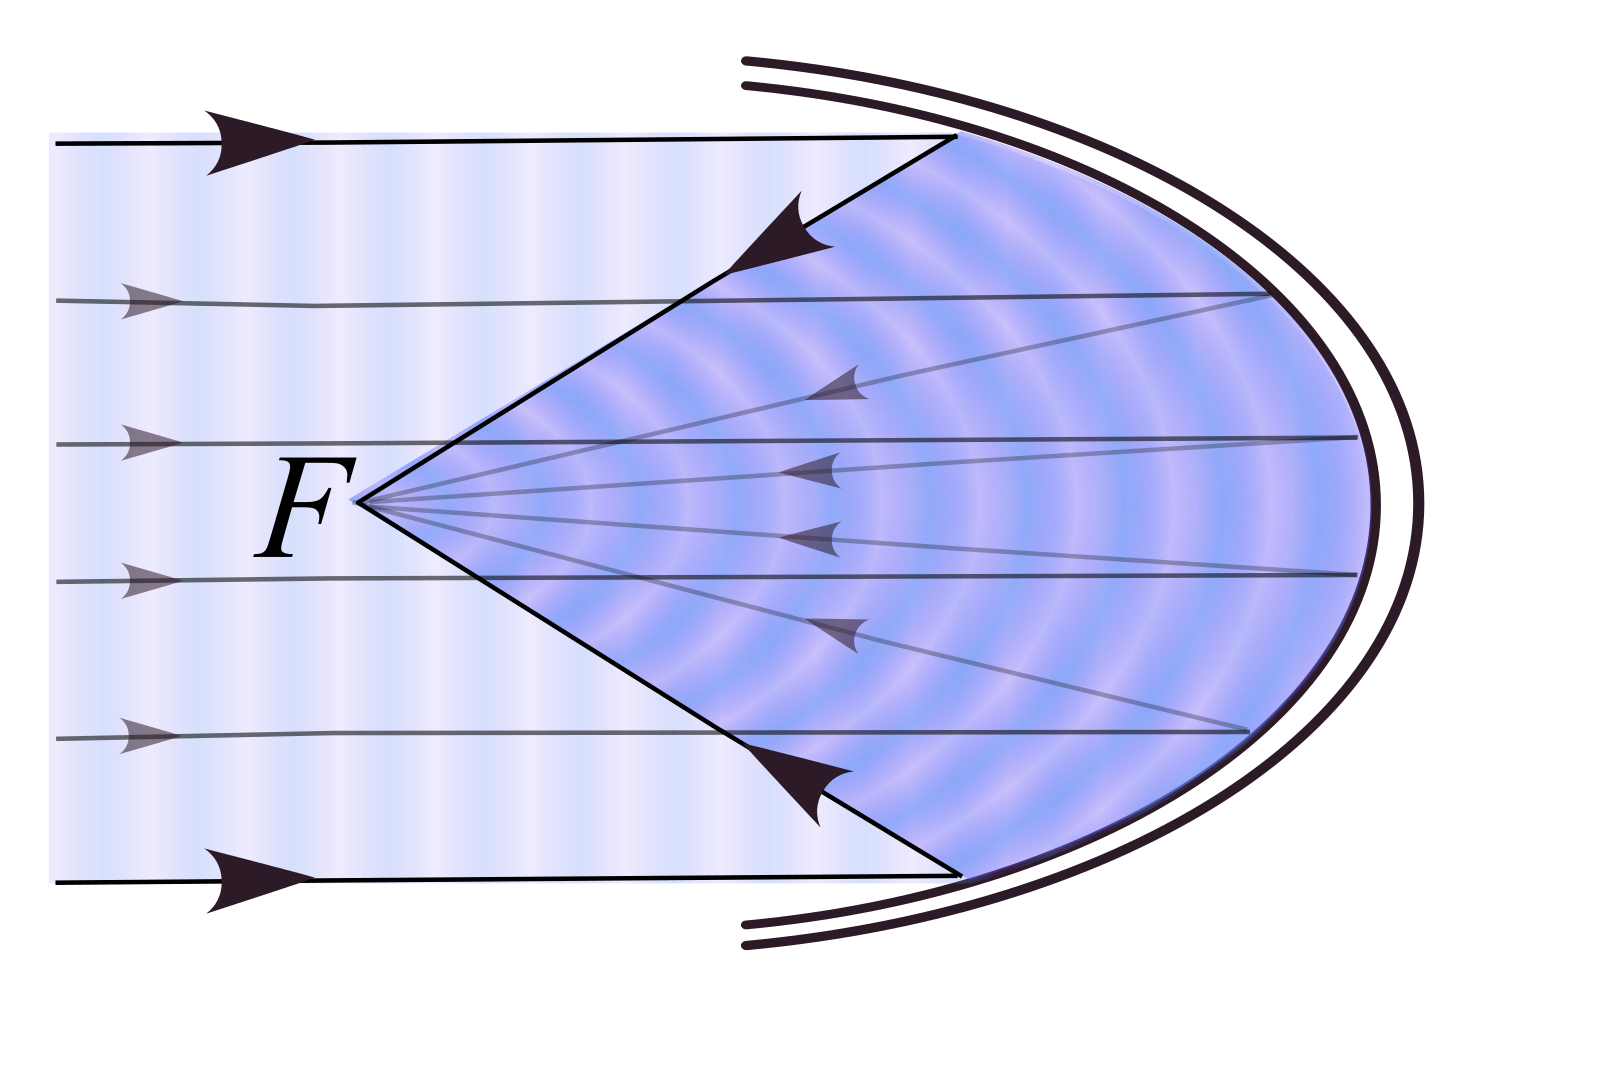 Параболический Солнечный концентратор. Отражатель параболический зеркальный. Параболический рефлектор фокус. Рефлектор - параболическое зеркало - отражатель. Пятно света от луча